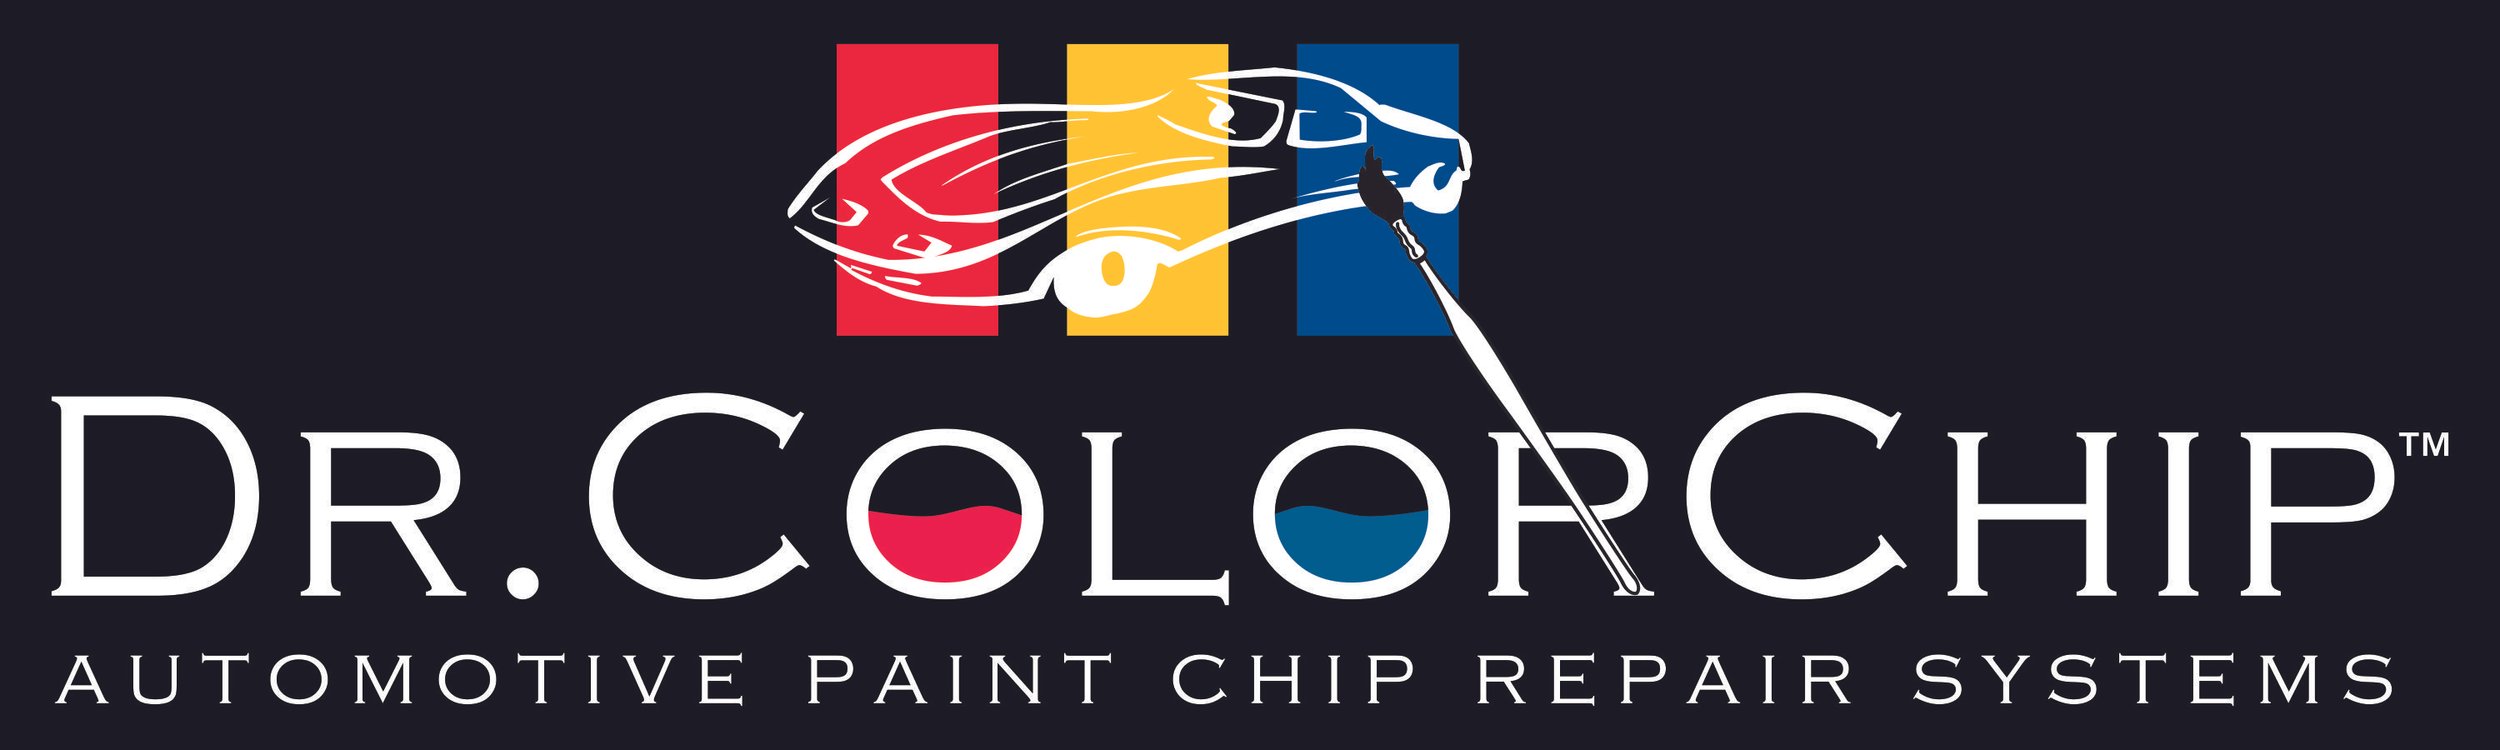 Dr. ColorChip Logo on Black.jpg